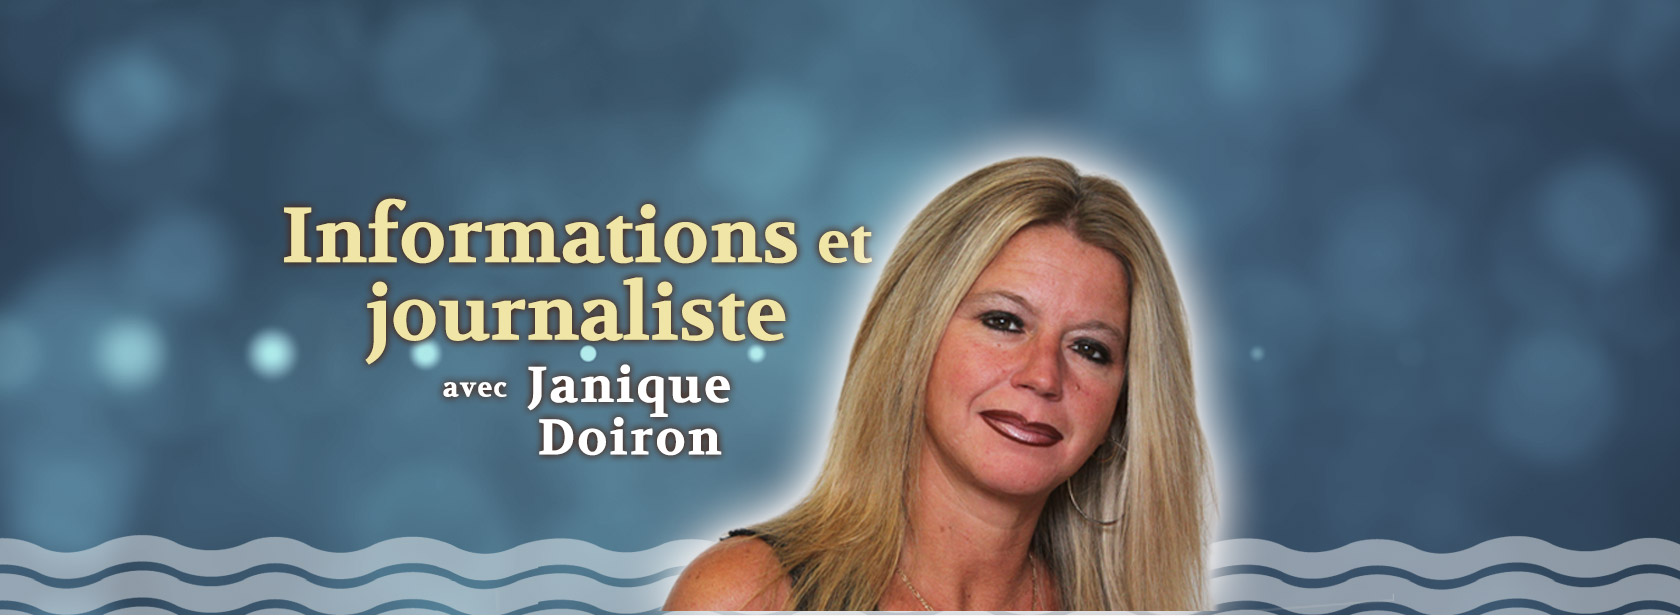 Janique Doiron, Informations et journaliste